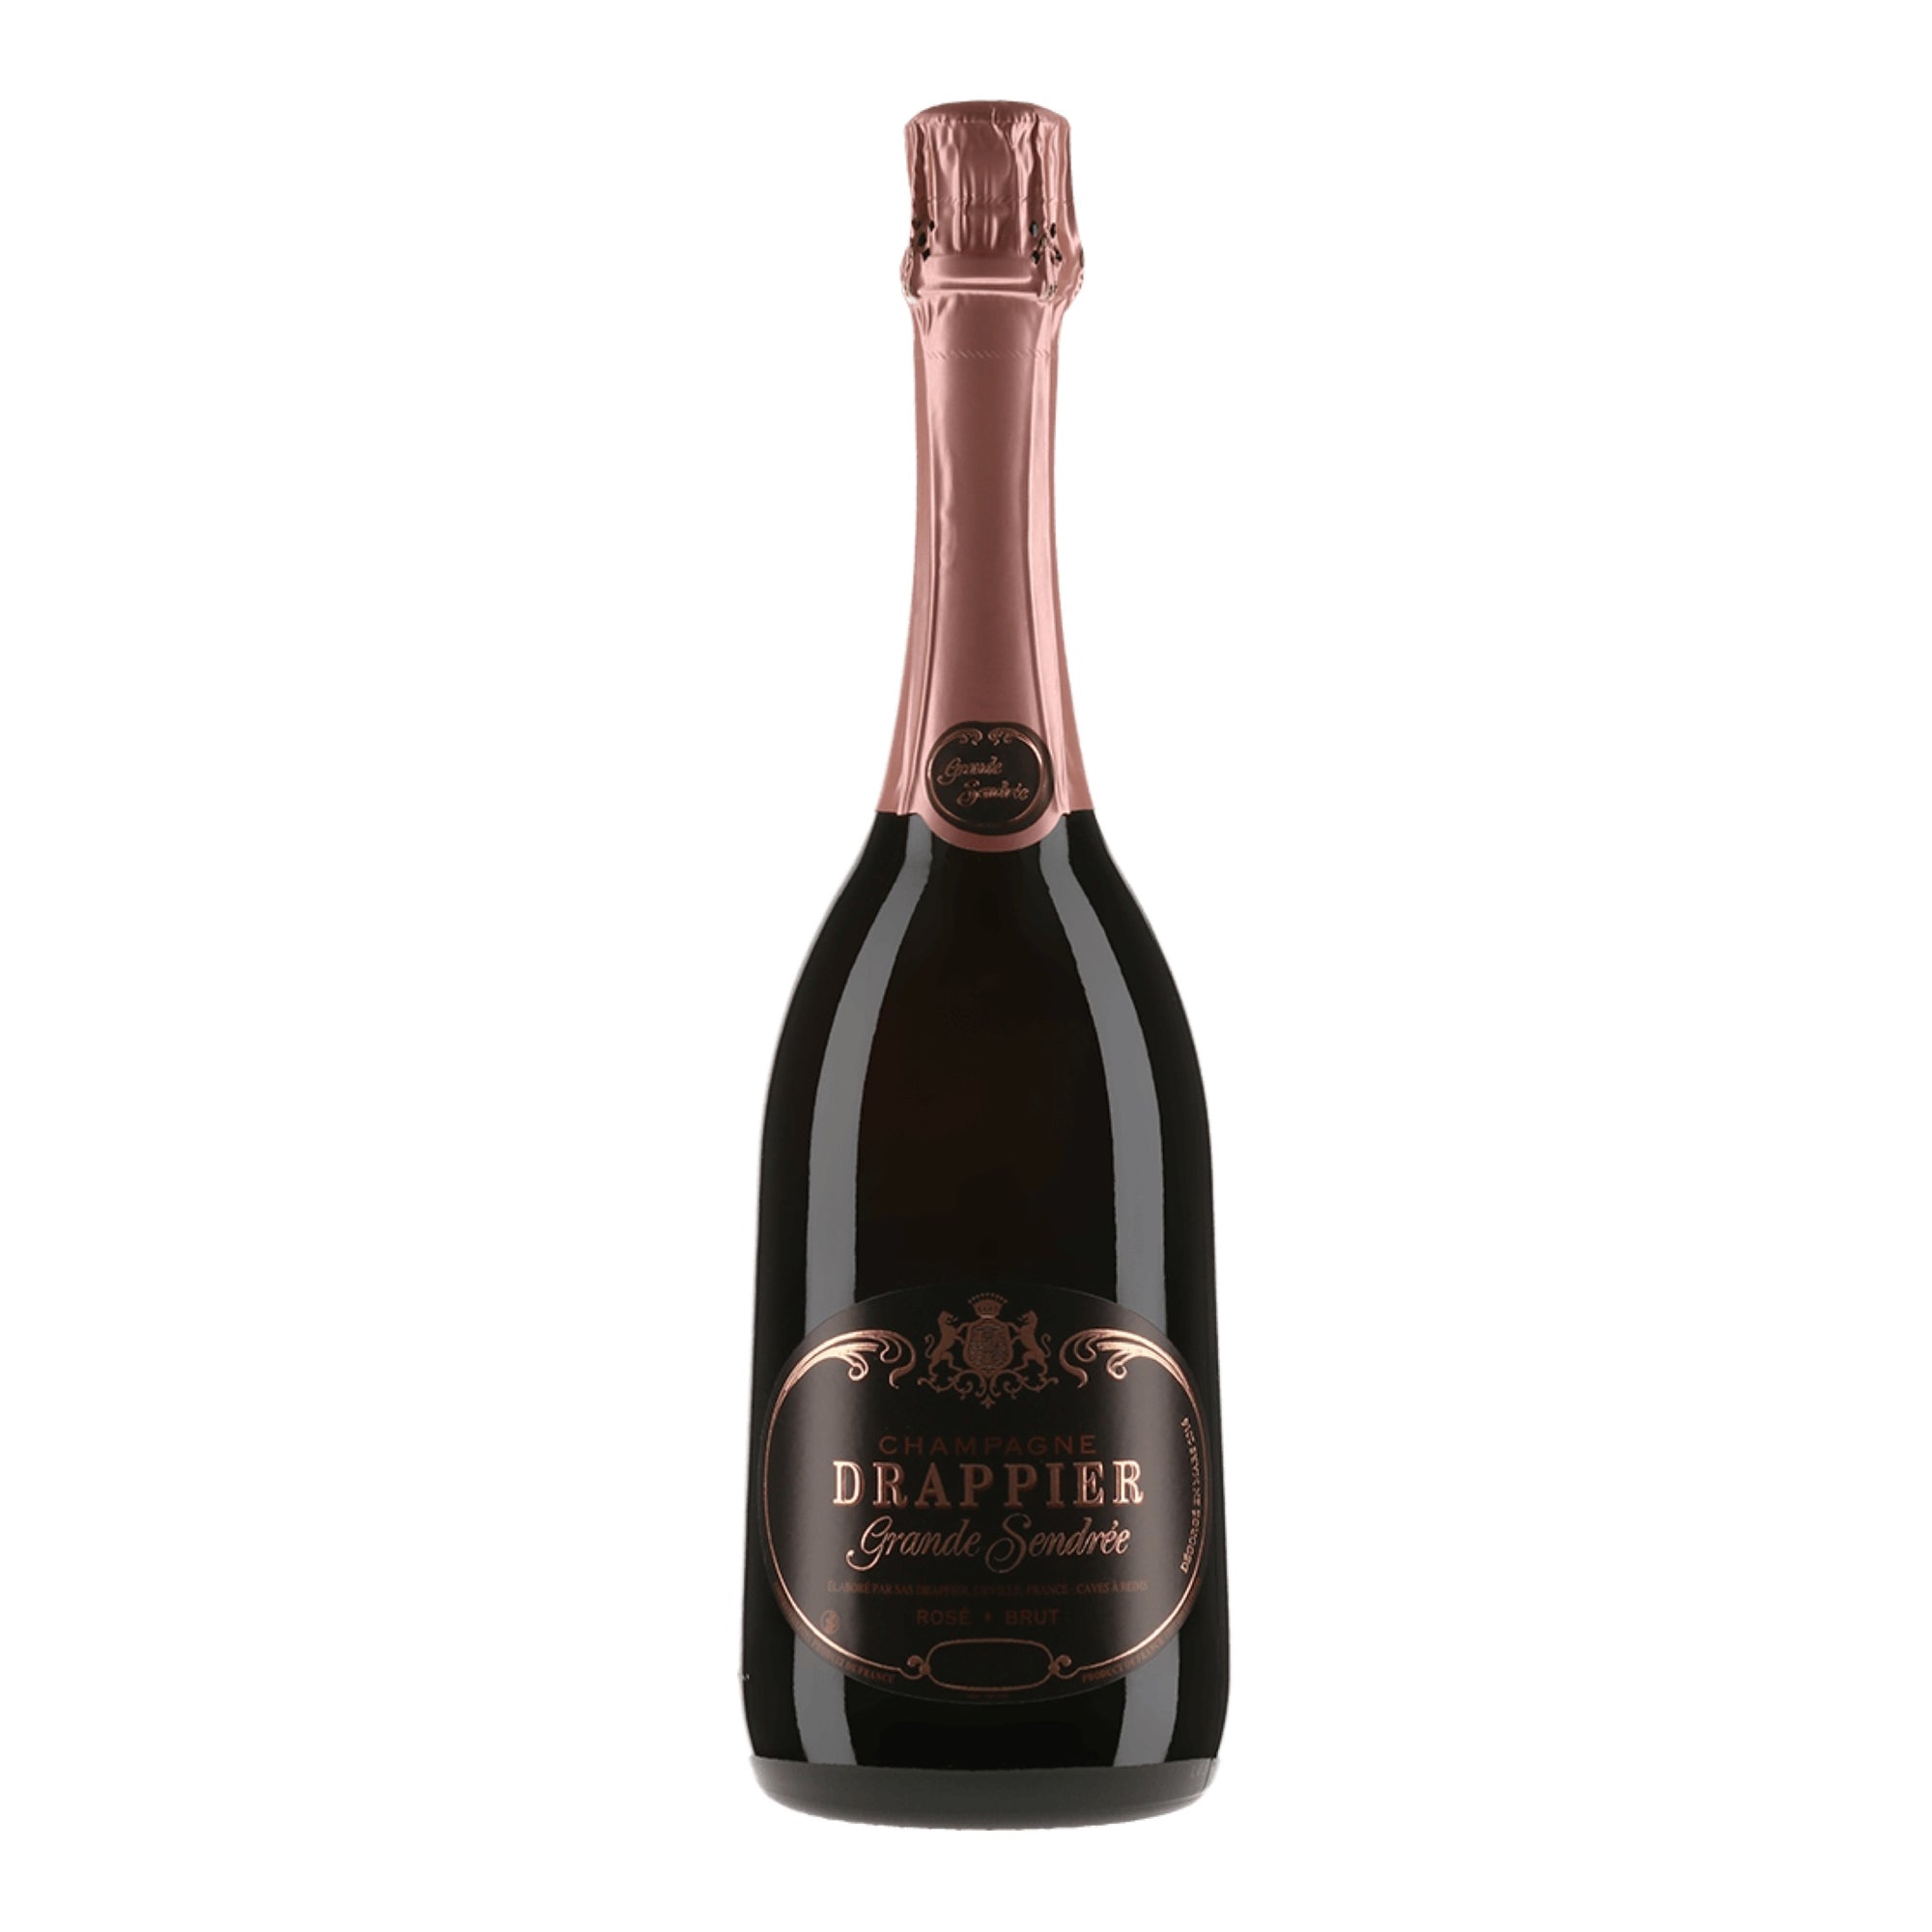 DRAPPIER Champagne Brut "La Grande Sendree" Rose 2010